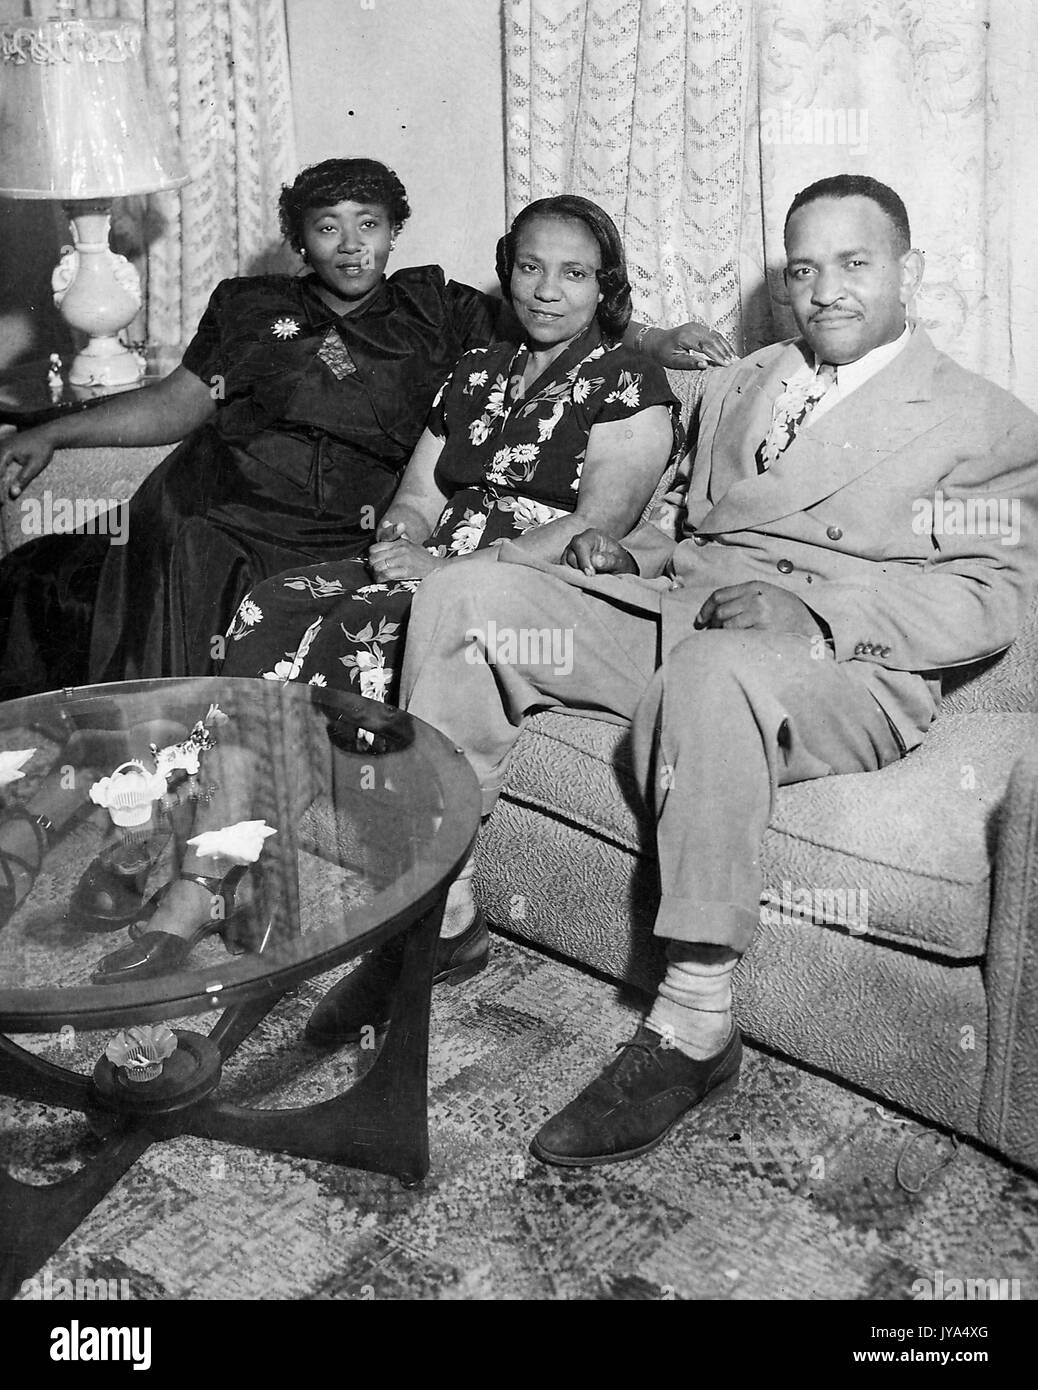 African-american family, père, mère et fille, assise sur un sofa dans leur maison, table basse en verre avec figurines visible dans l'avant-plan, une lampe et des rideaux à l'arrière-plan, 1960. Banque D'Images